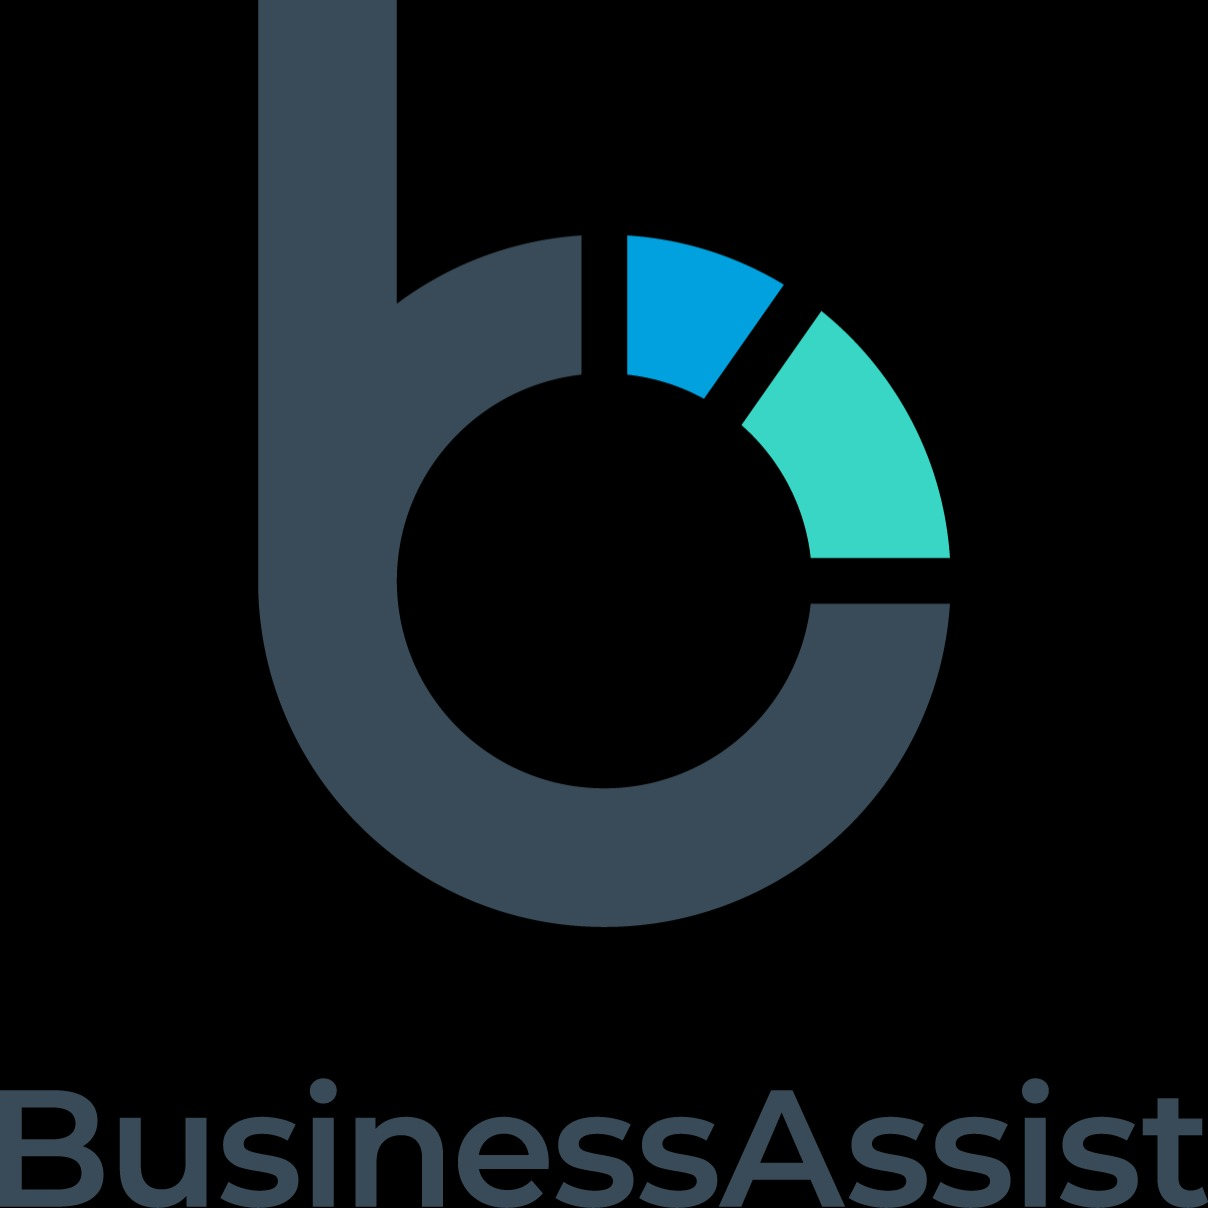 Business Assist - Digital Marketing Melbourne Melbourne